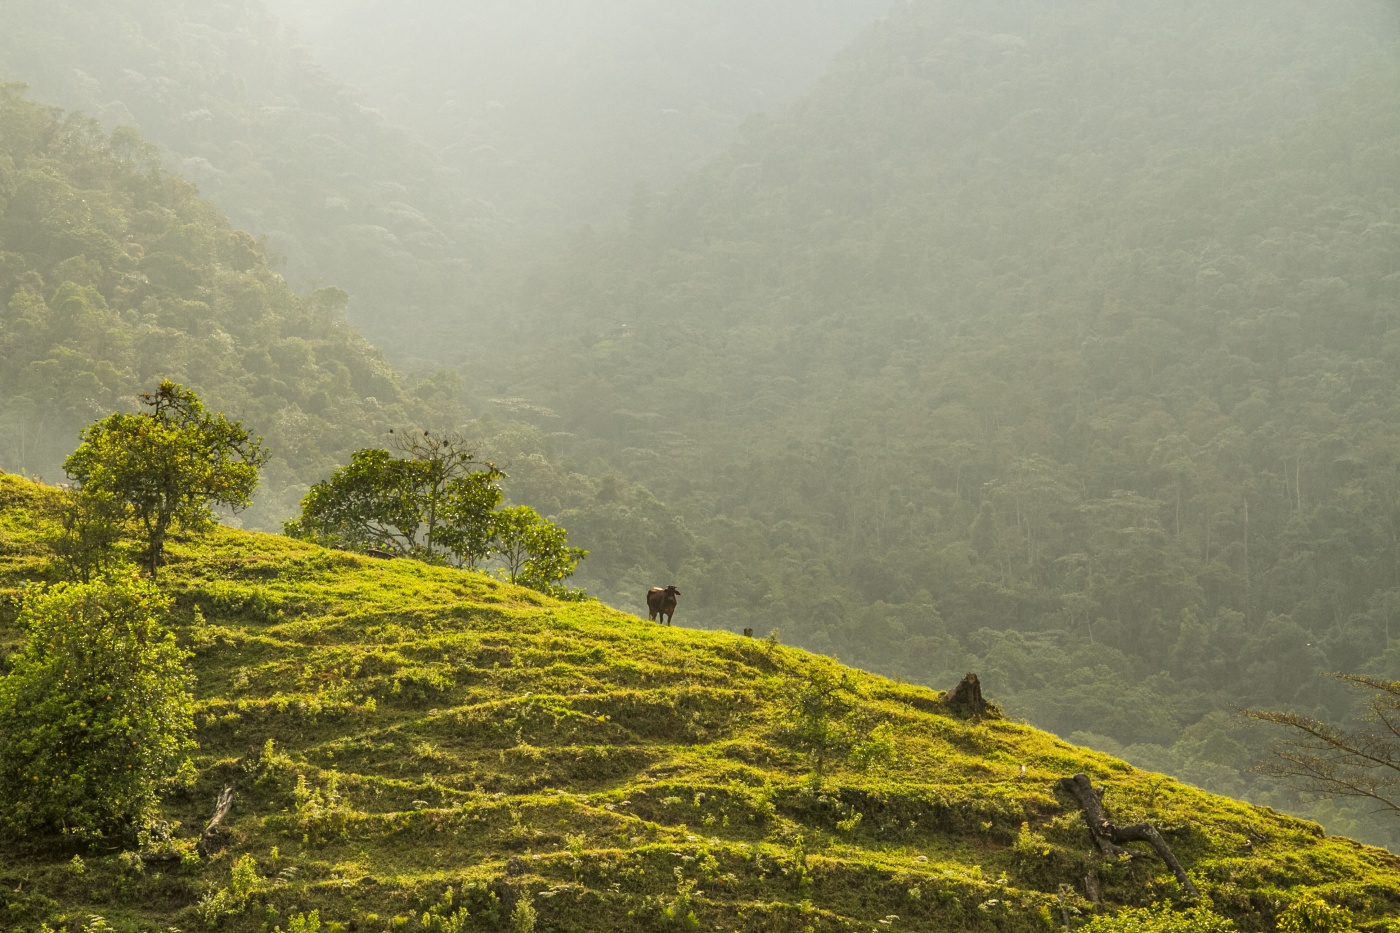 Colombia Avanza hacia la Neutralidad de Emisiones de Carbono  con la Lucha contra la Deforestación y la Restauración de Paisajes como Enfoque Fundamental